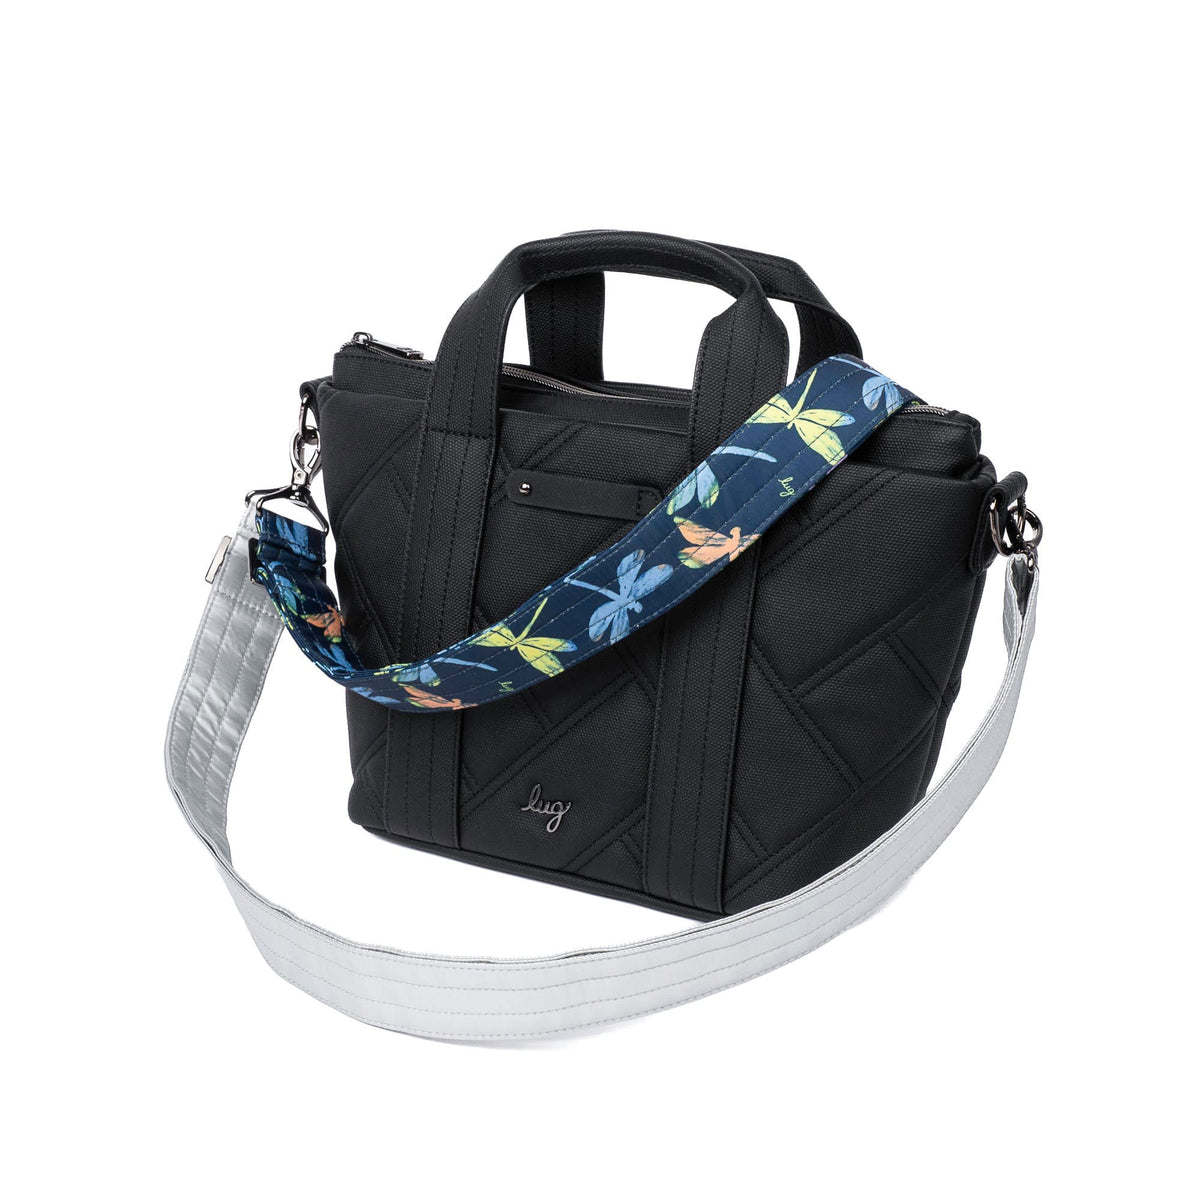 Adjustable Bag Straps - 1 